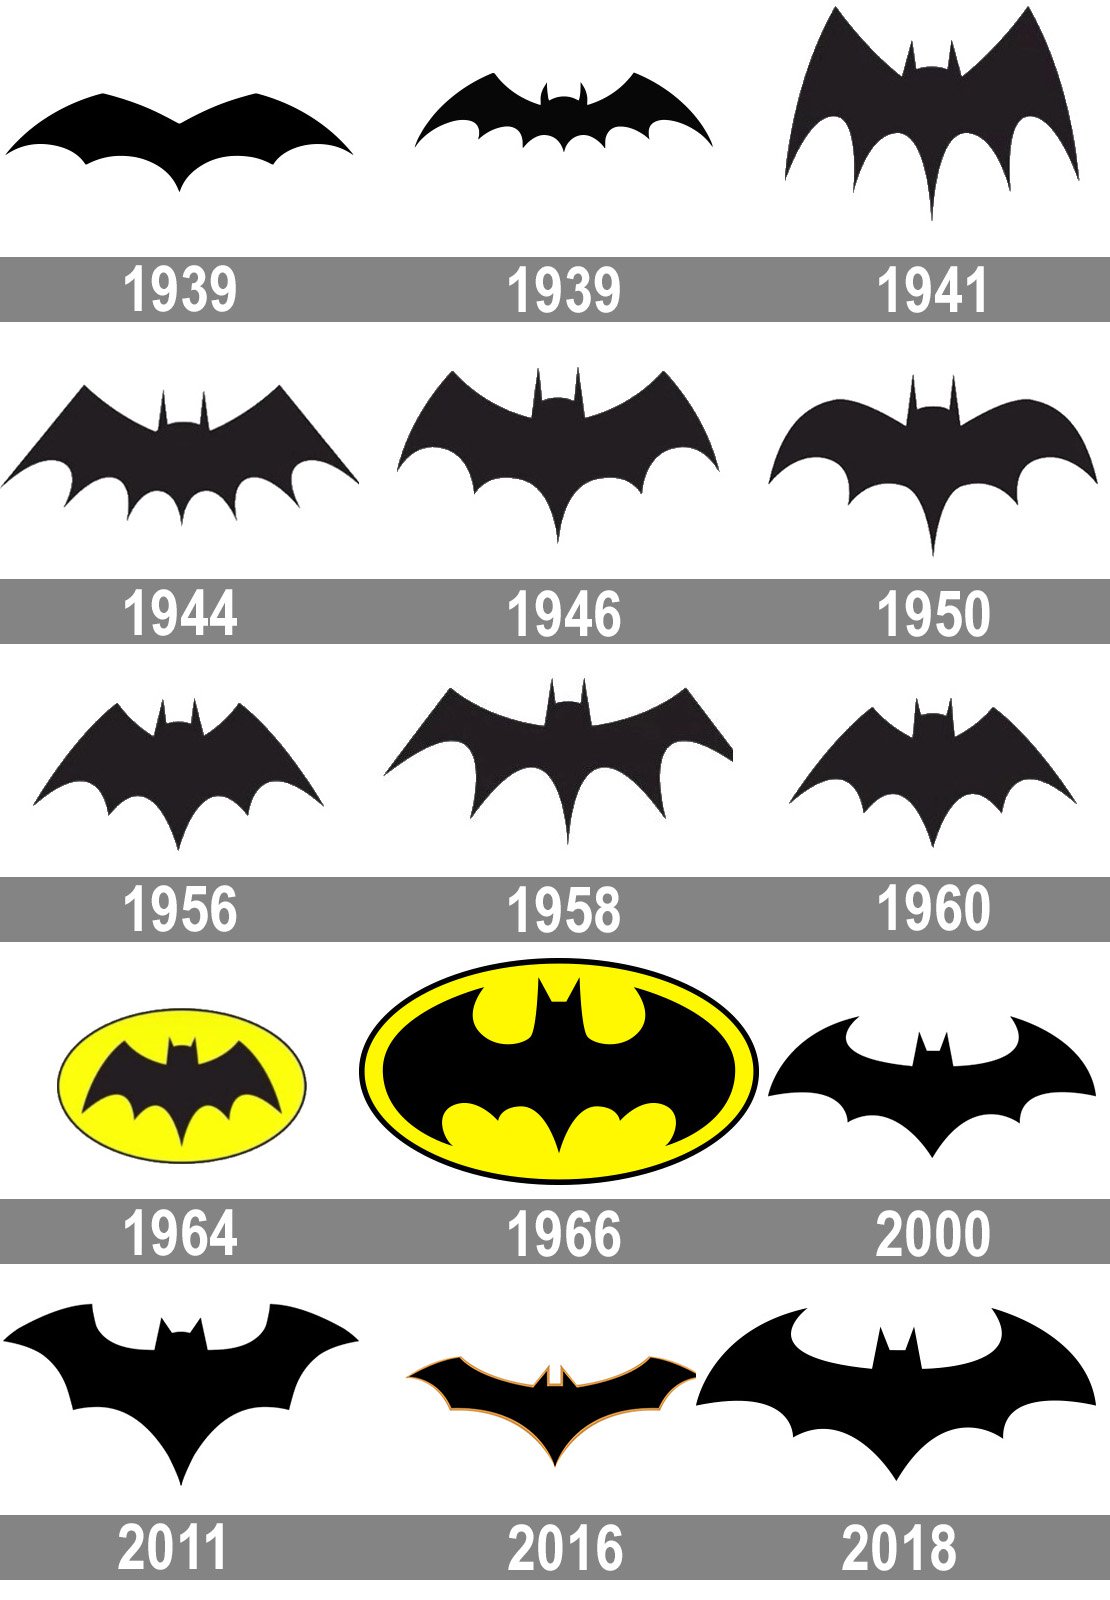 Bat symbol evolution over time